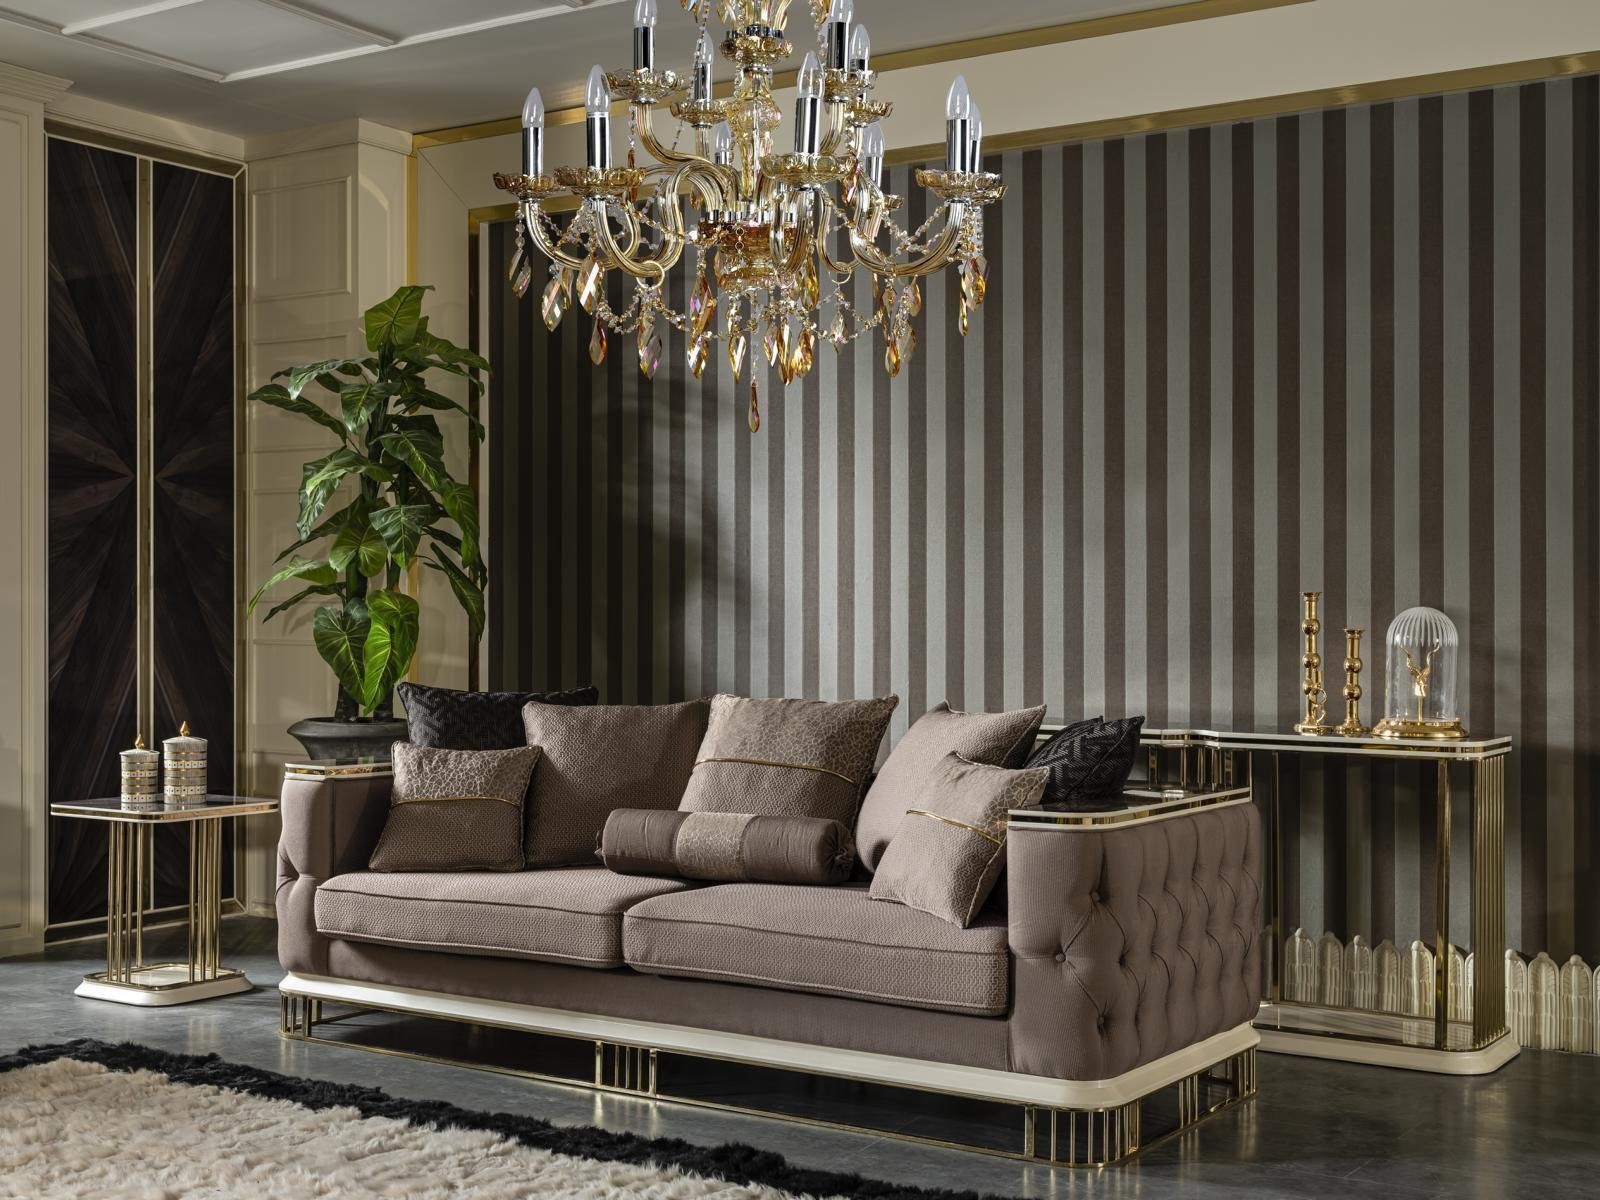 JVmoebel Sofa Sofa 3 Sitzer Braun Design Luxus Polster Stoff Wohnzimmer Möbel, Made in Europe